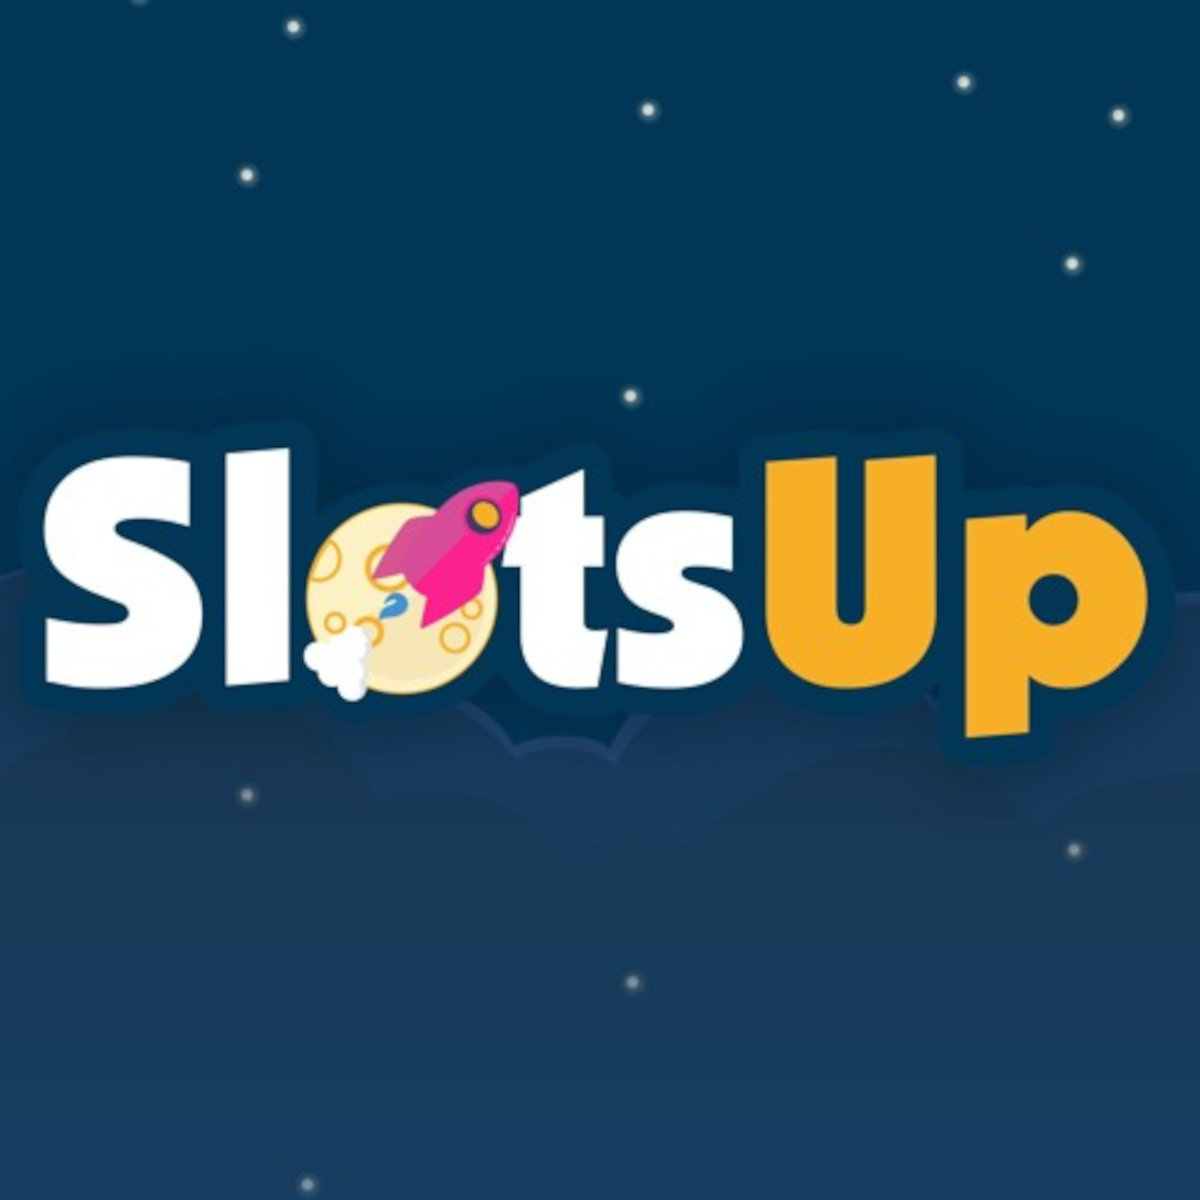 SlotsUp
Revues des casinos en ligne, des joueurs pour les joueurs !